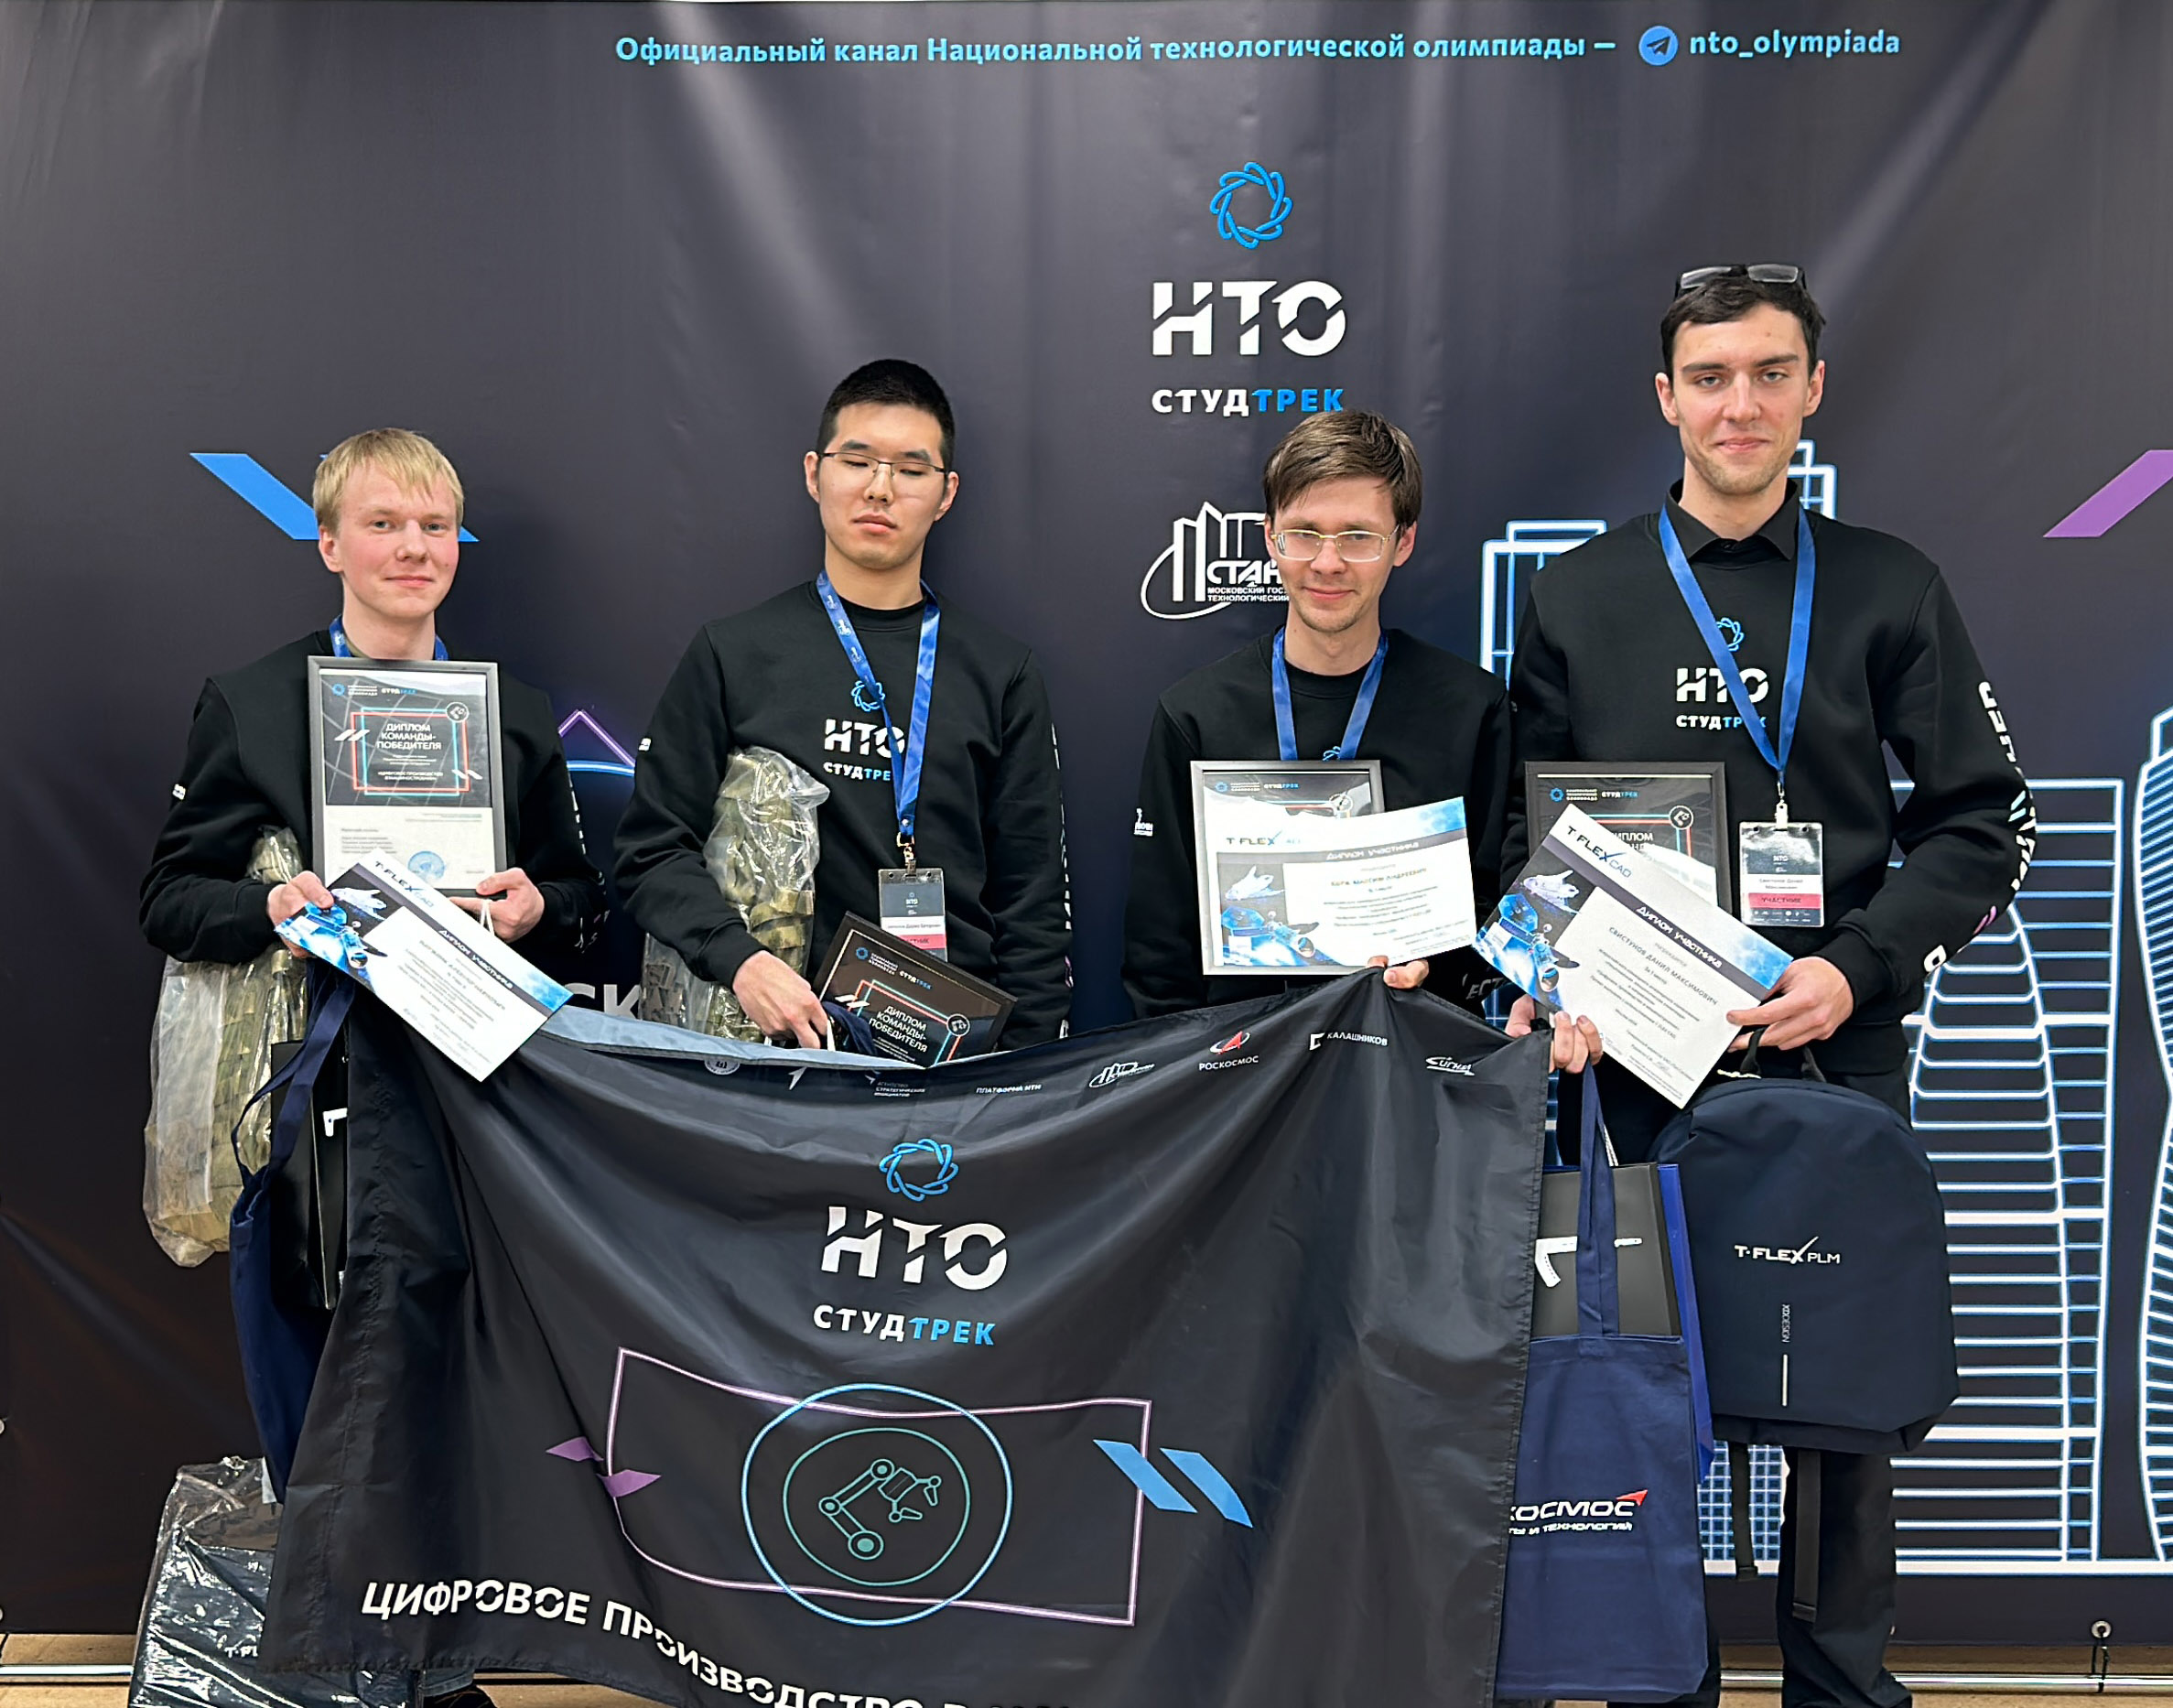 ИРНИТУ с T-FLEX PLM победил в Национальной технологической олимпиаде